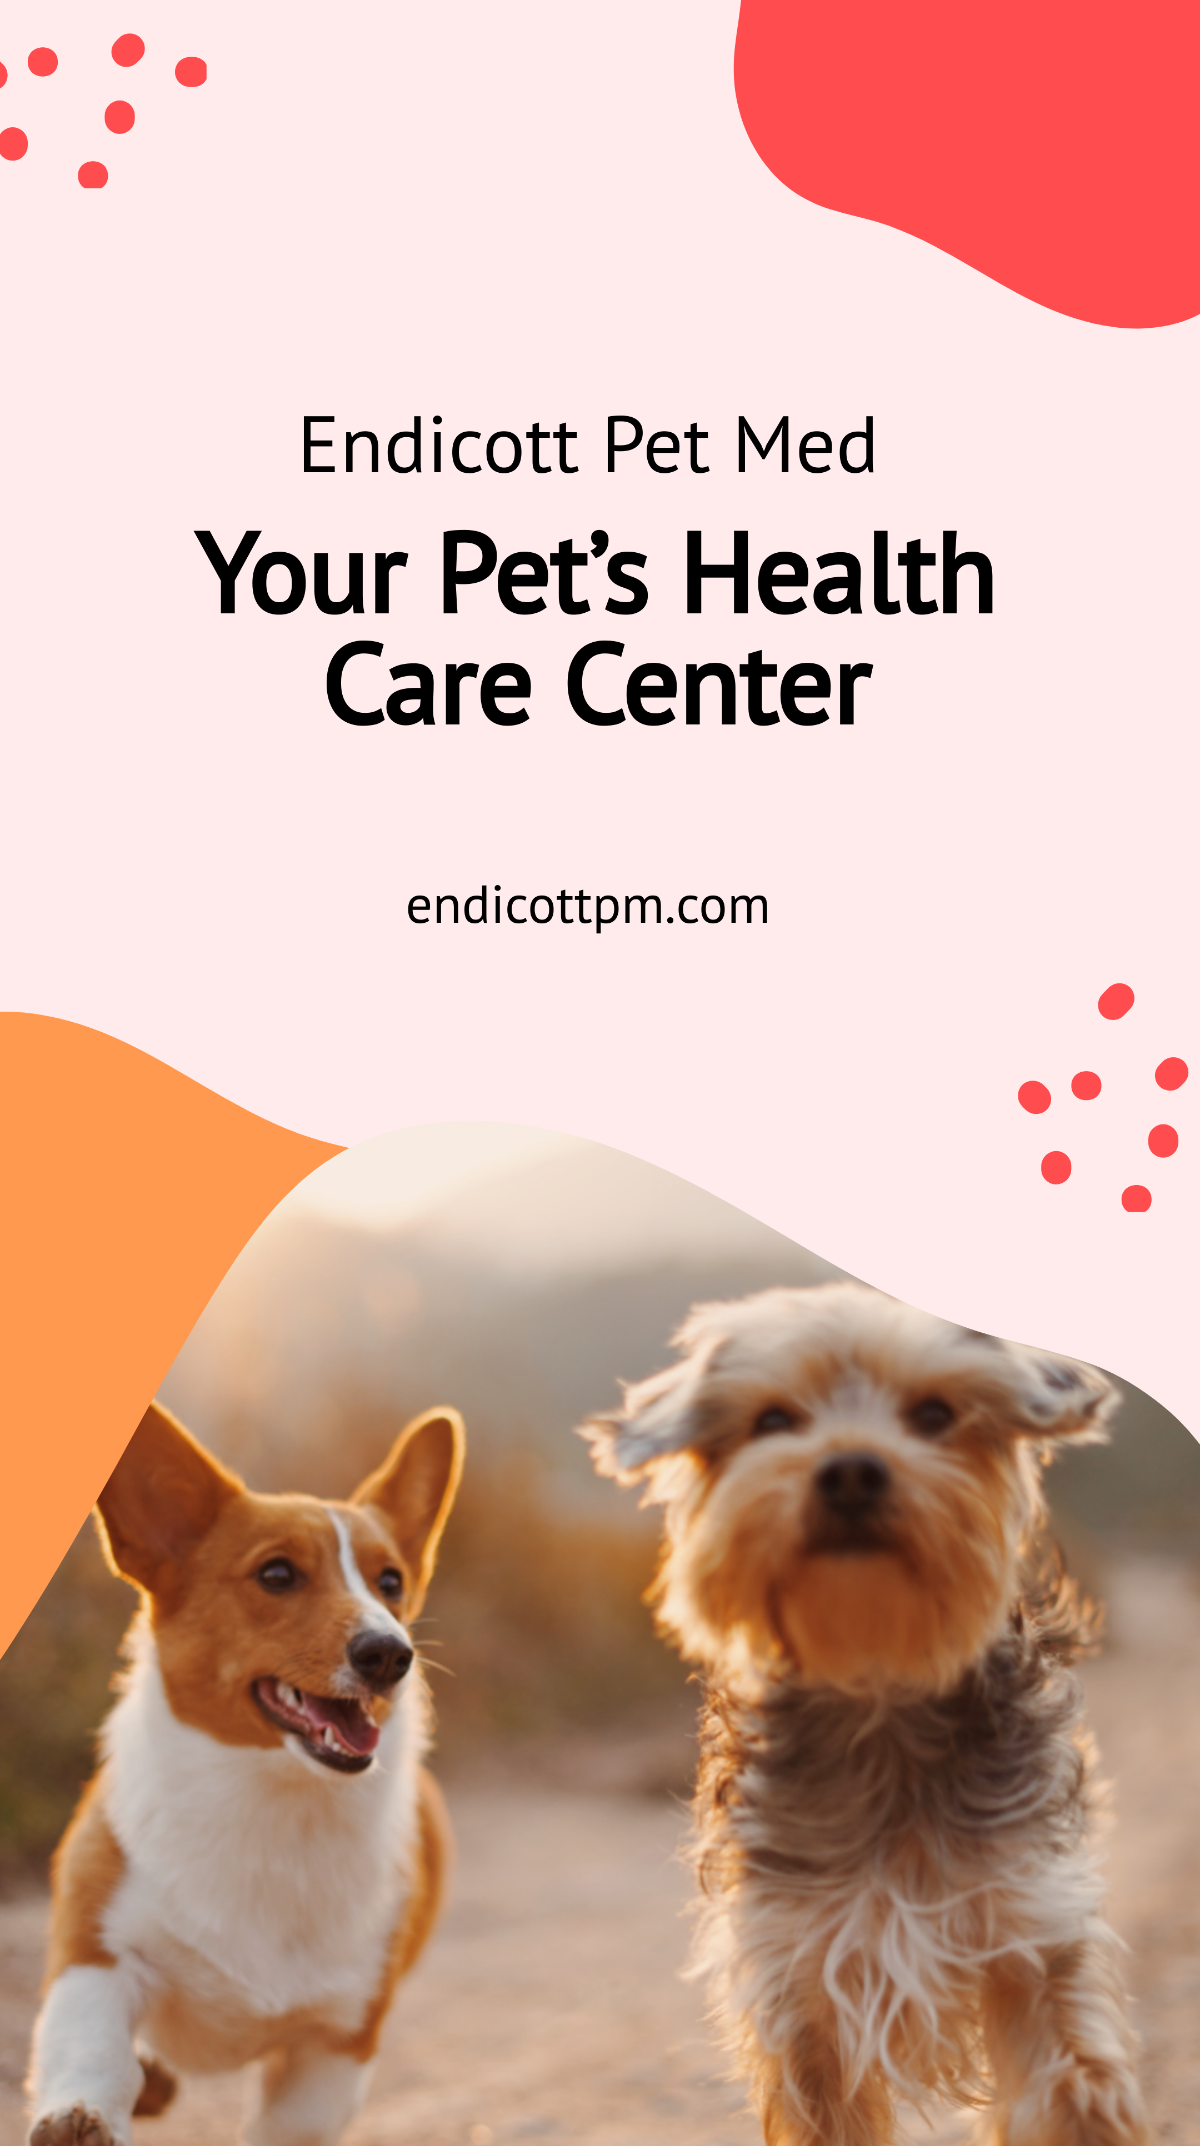 Free pet health samples